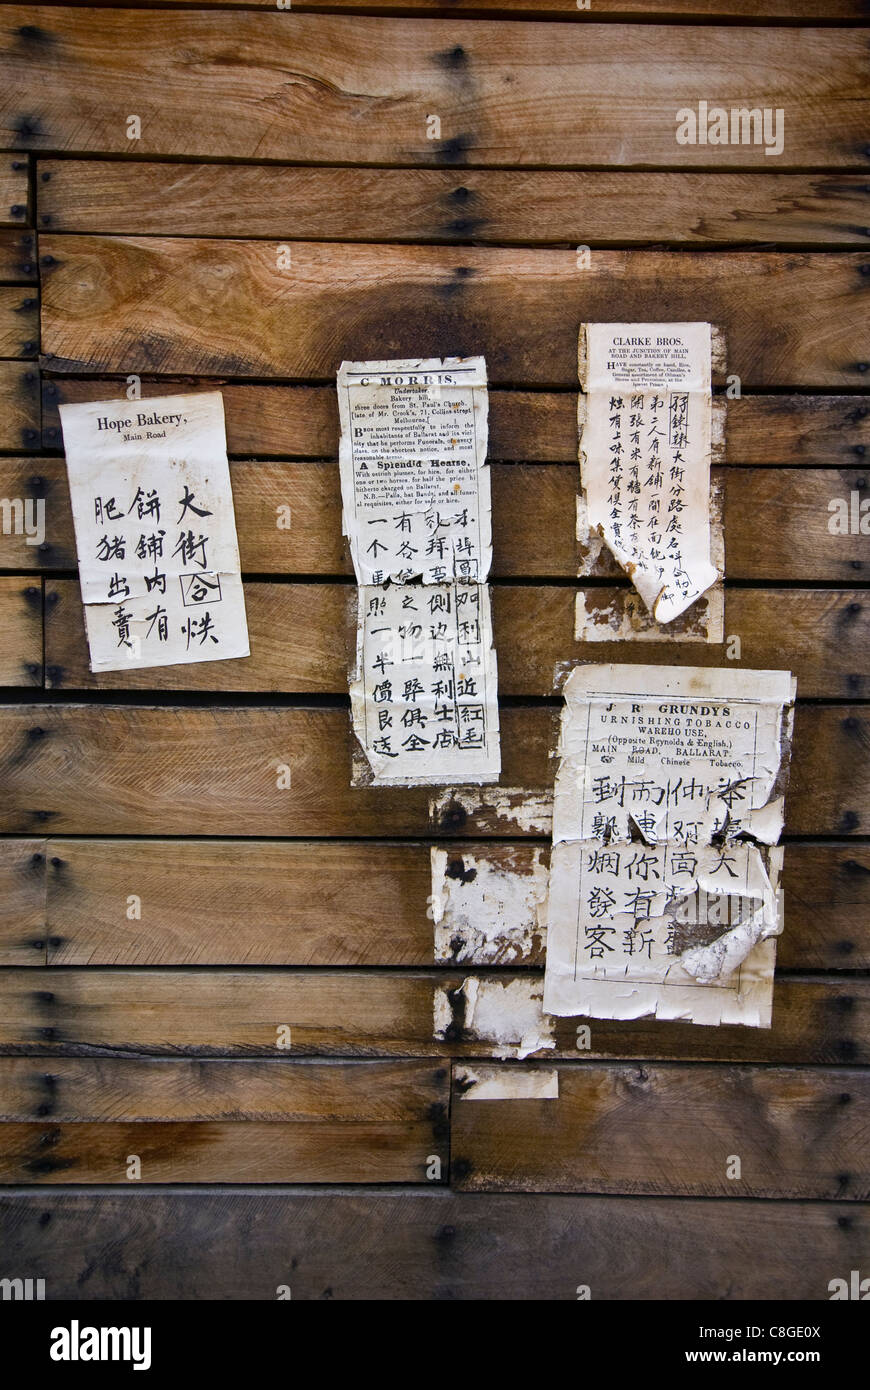 Chinesische Schrift auf gedruckte Bekanntmachungen an eine Scheune Wand geschrieben. Stockfoto